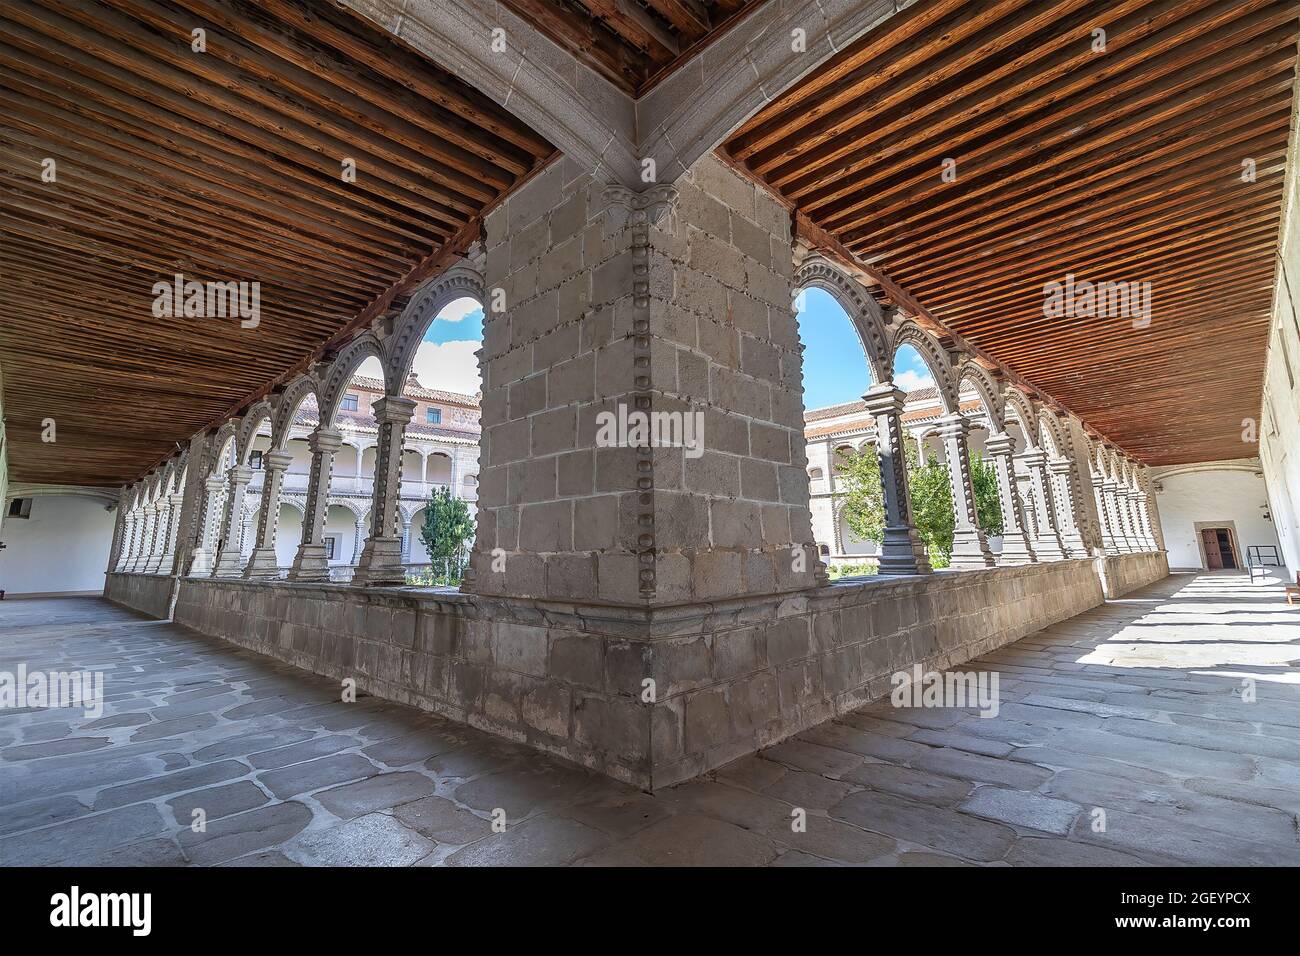 Avila, Spagna - 9 settembre 2017: Cortile del luogo di sepoltura di Don Juan, figlio di Reyes Catolicos, Fernando e Isabel, all'interno del Monastero reale Foto Stock